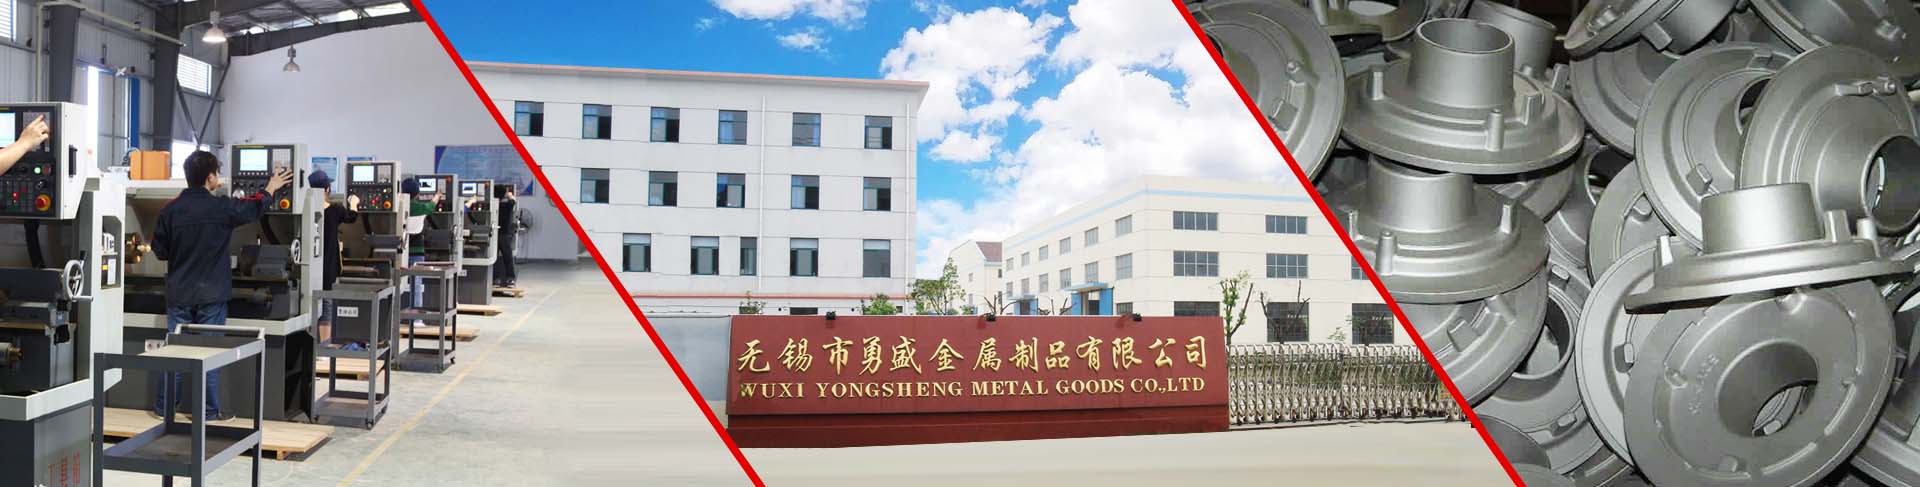 Wuxi Yongsheng Metals Goods Co.,Ltd.